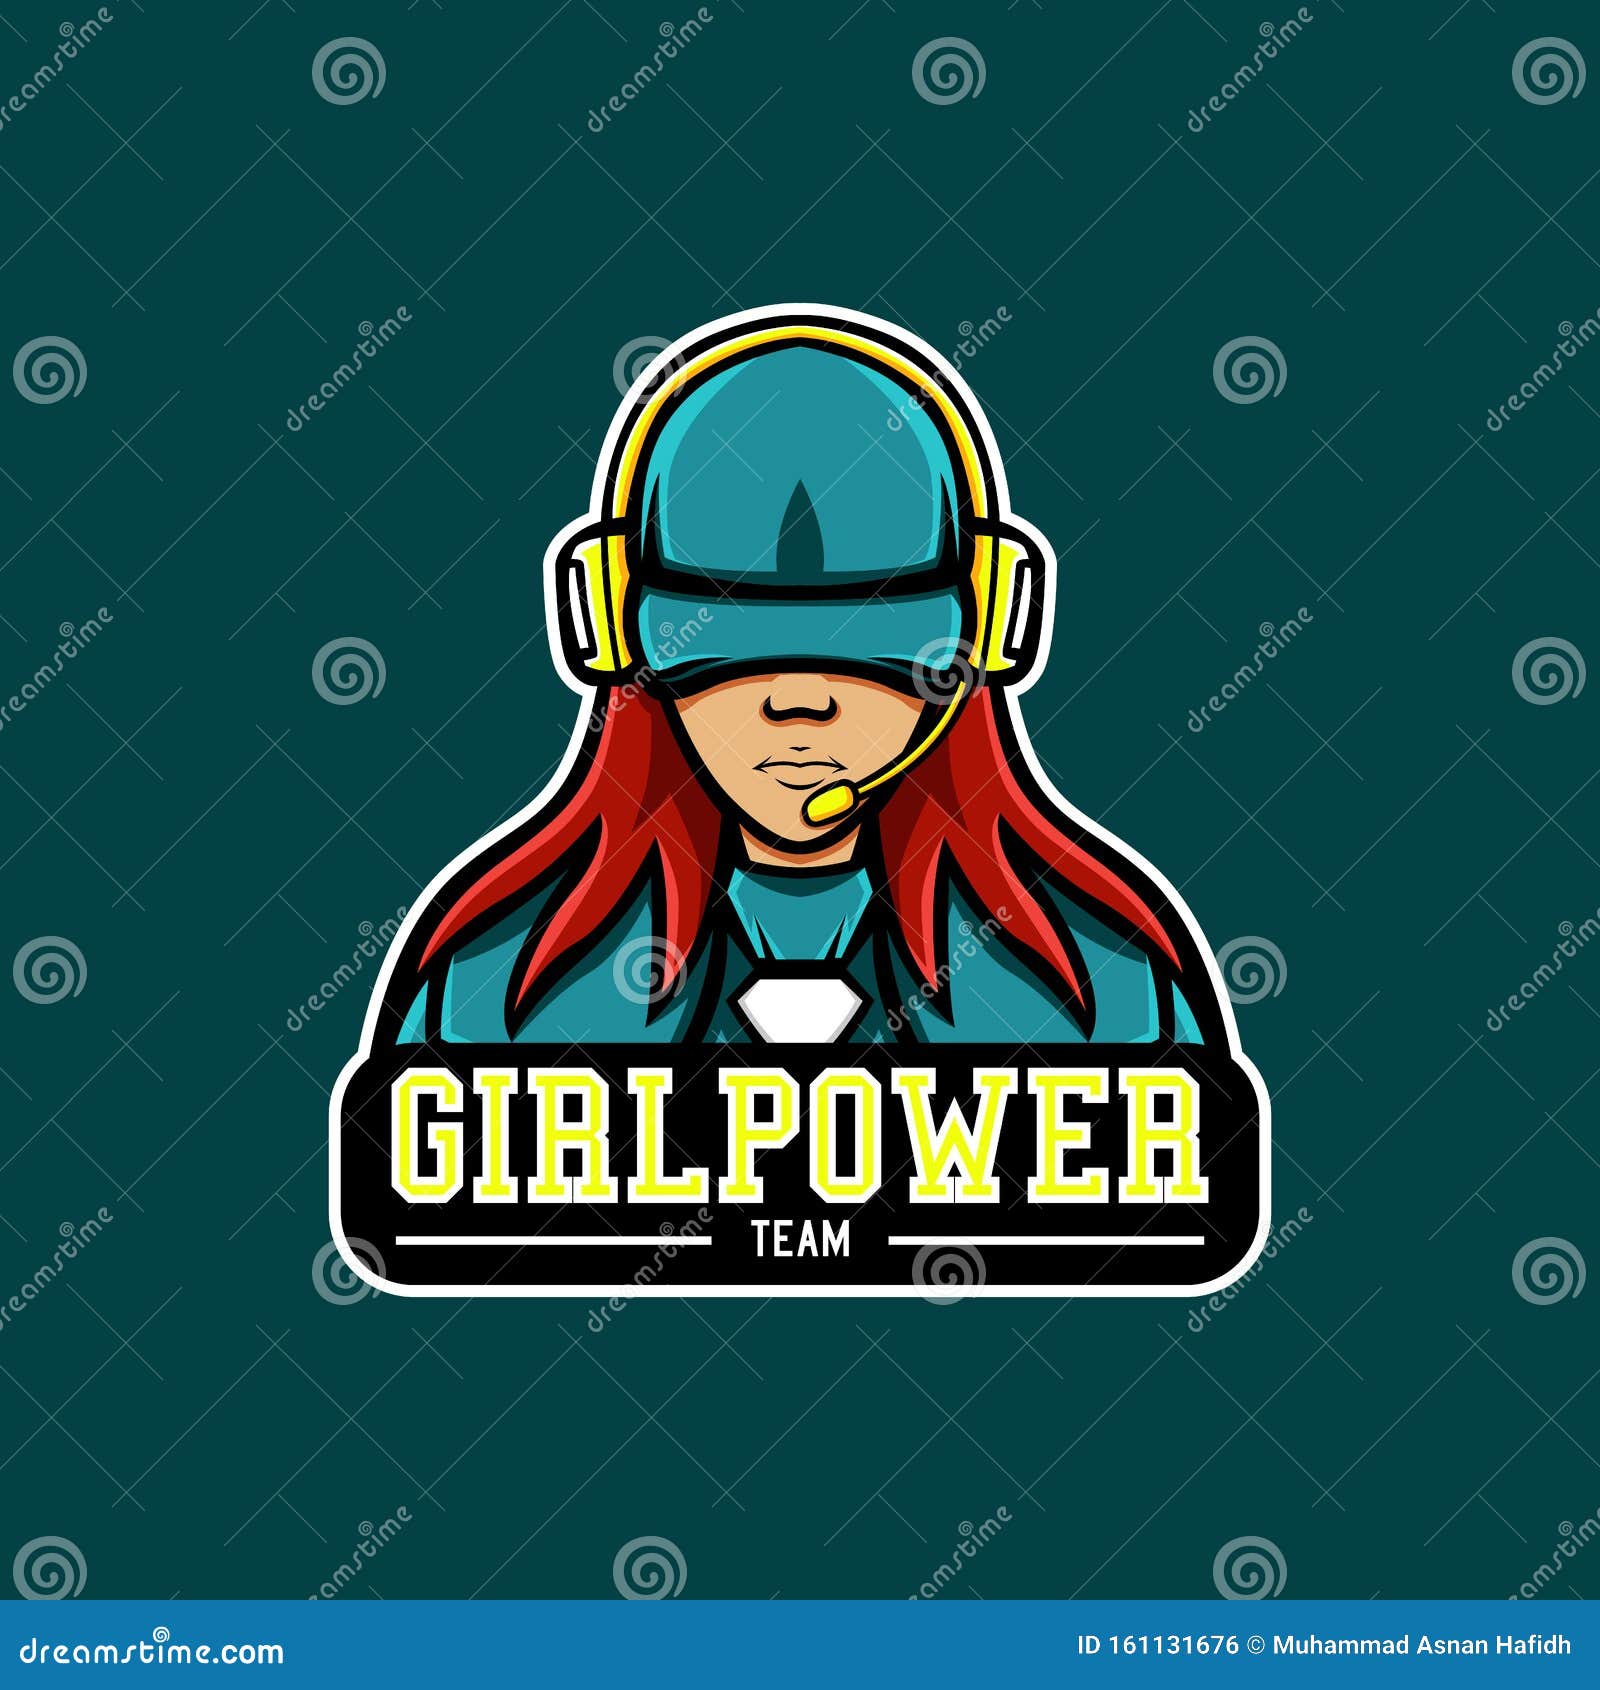 Girl Power Mascot Logo Stock Vector Illustration Of Female 161131676